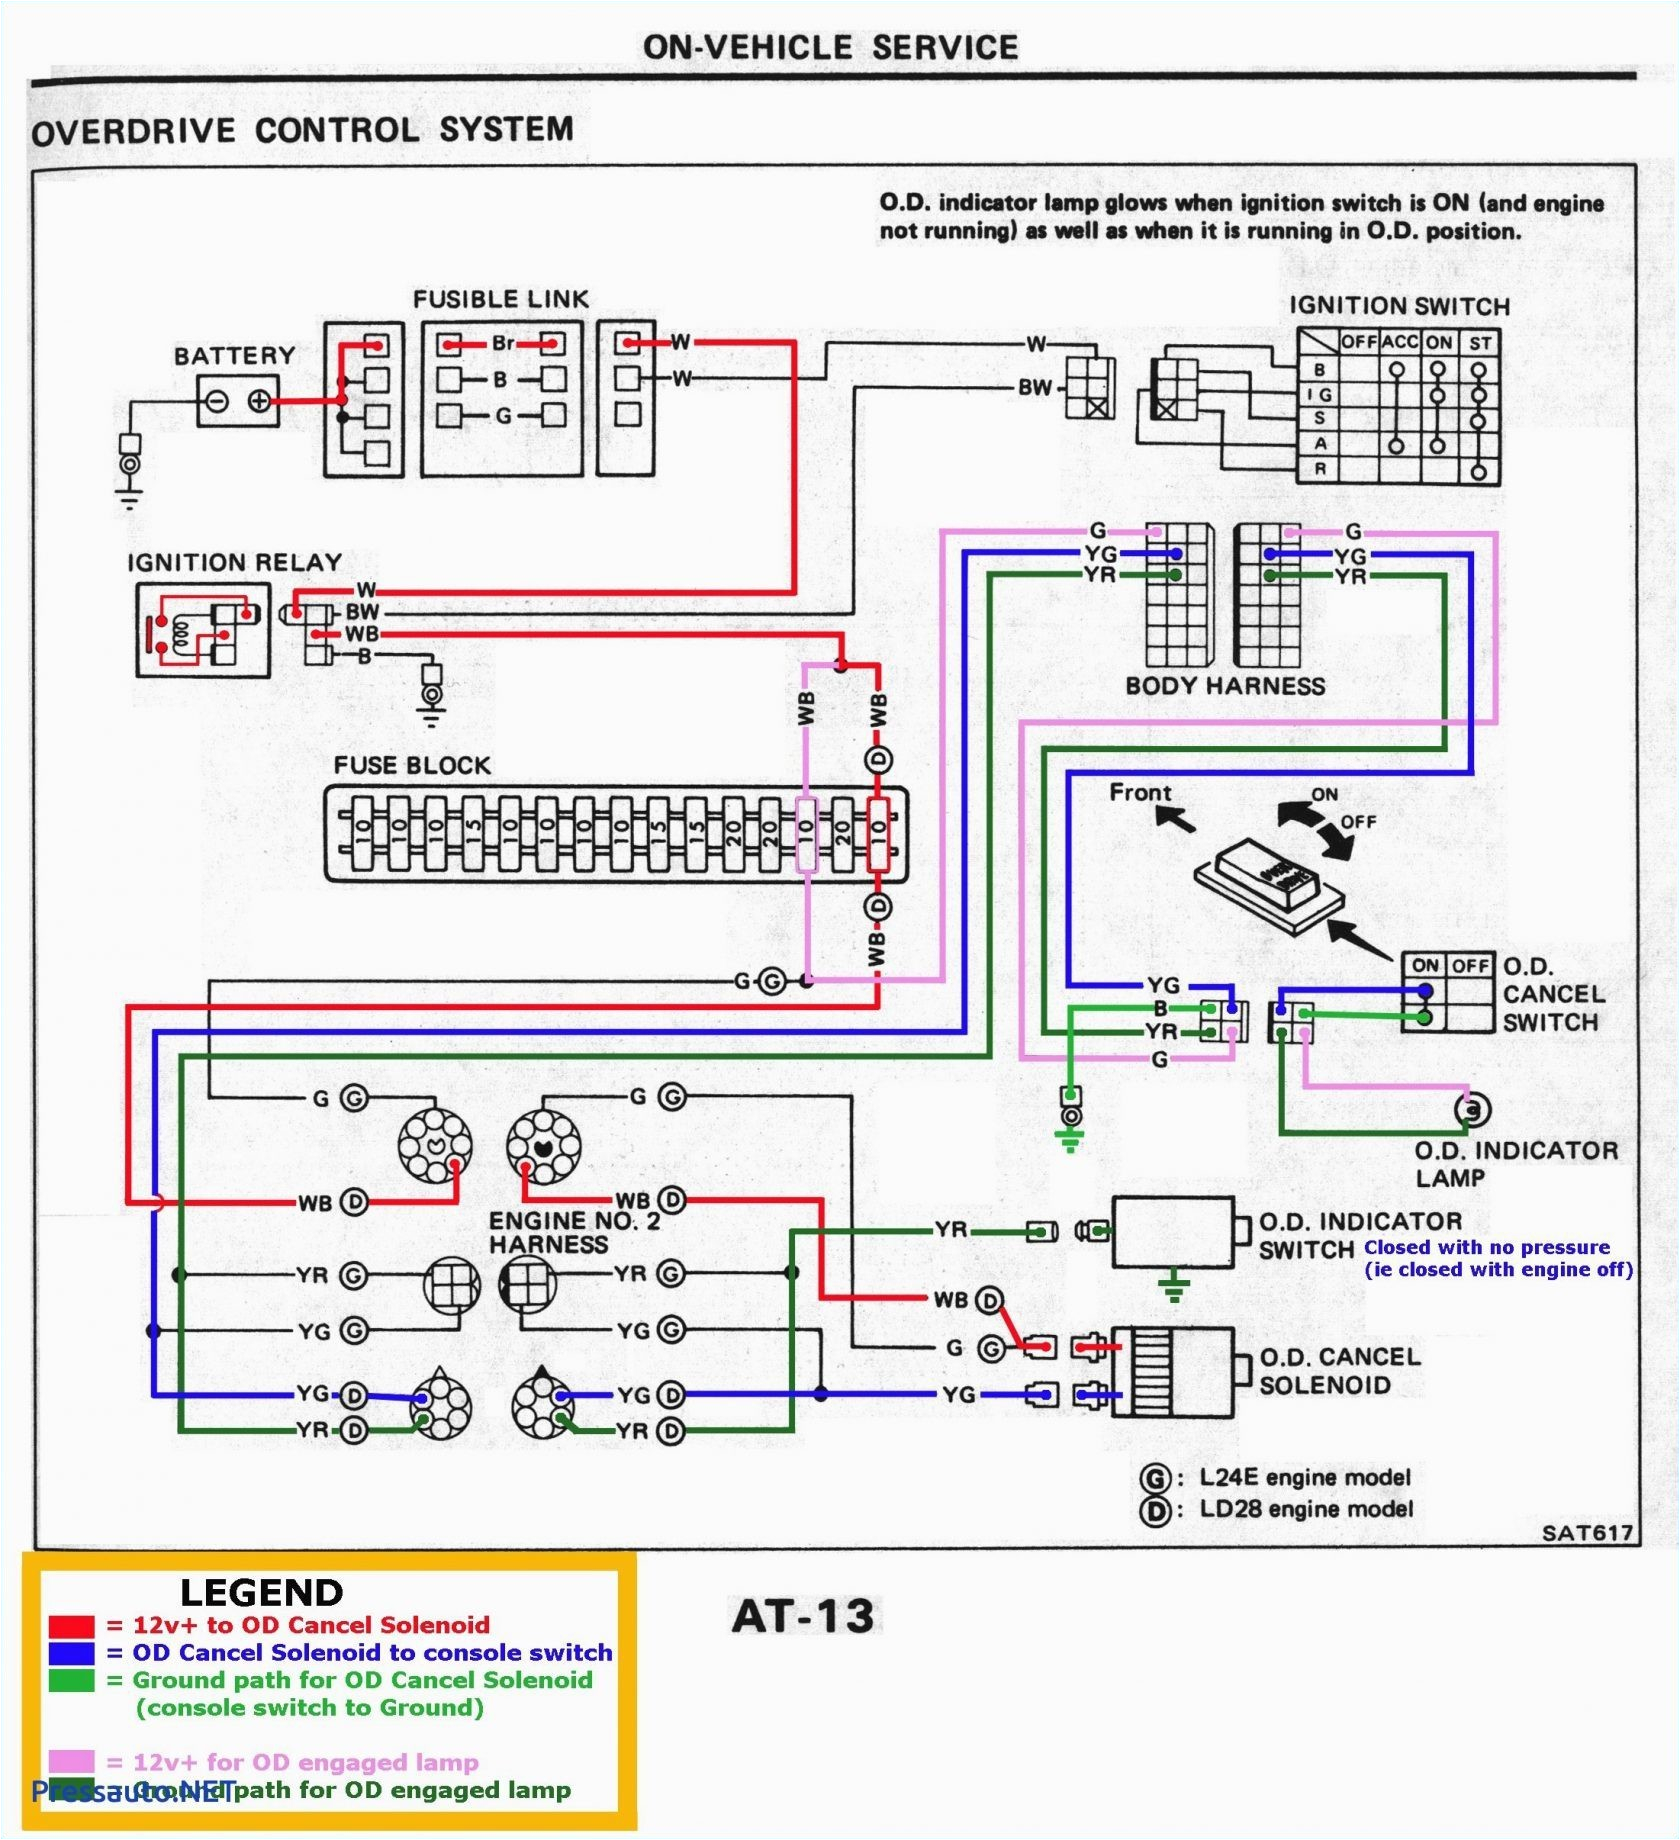 2011 Kia sorento Wiring Diagram Kia sorento Infinity Wiring Diagram Premium Wiring Diagram Blog